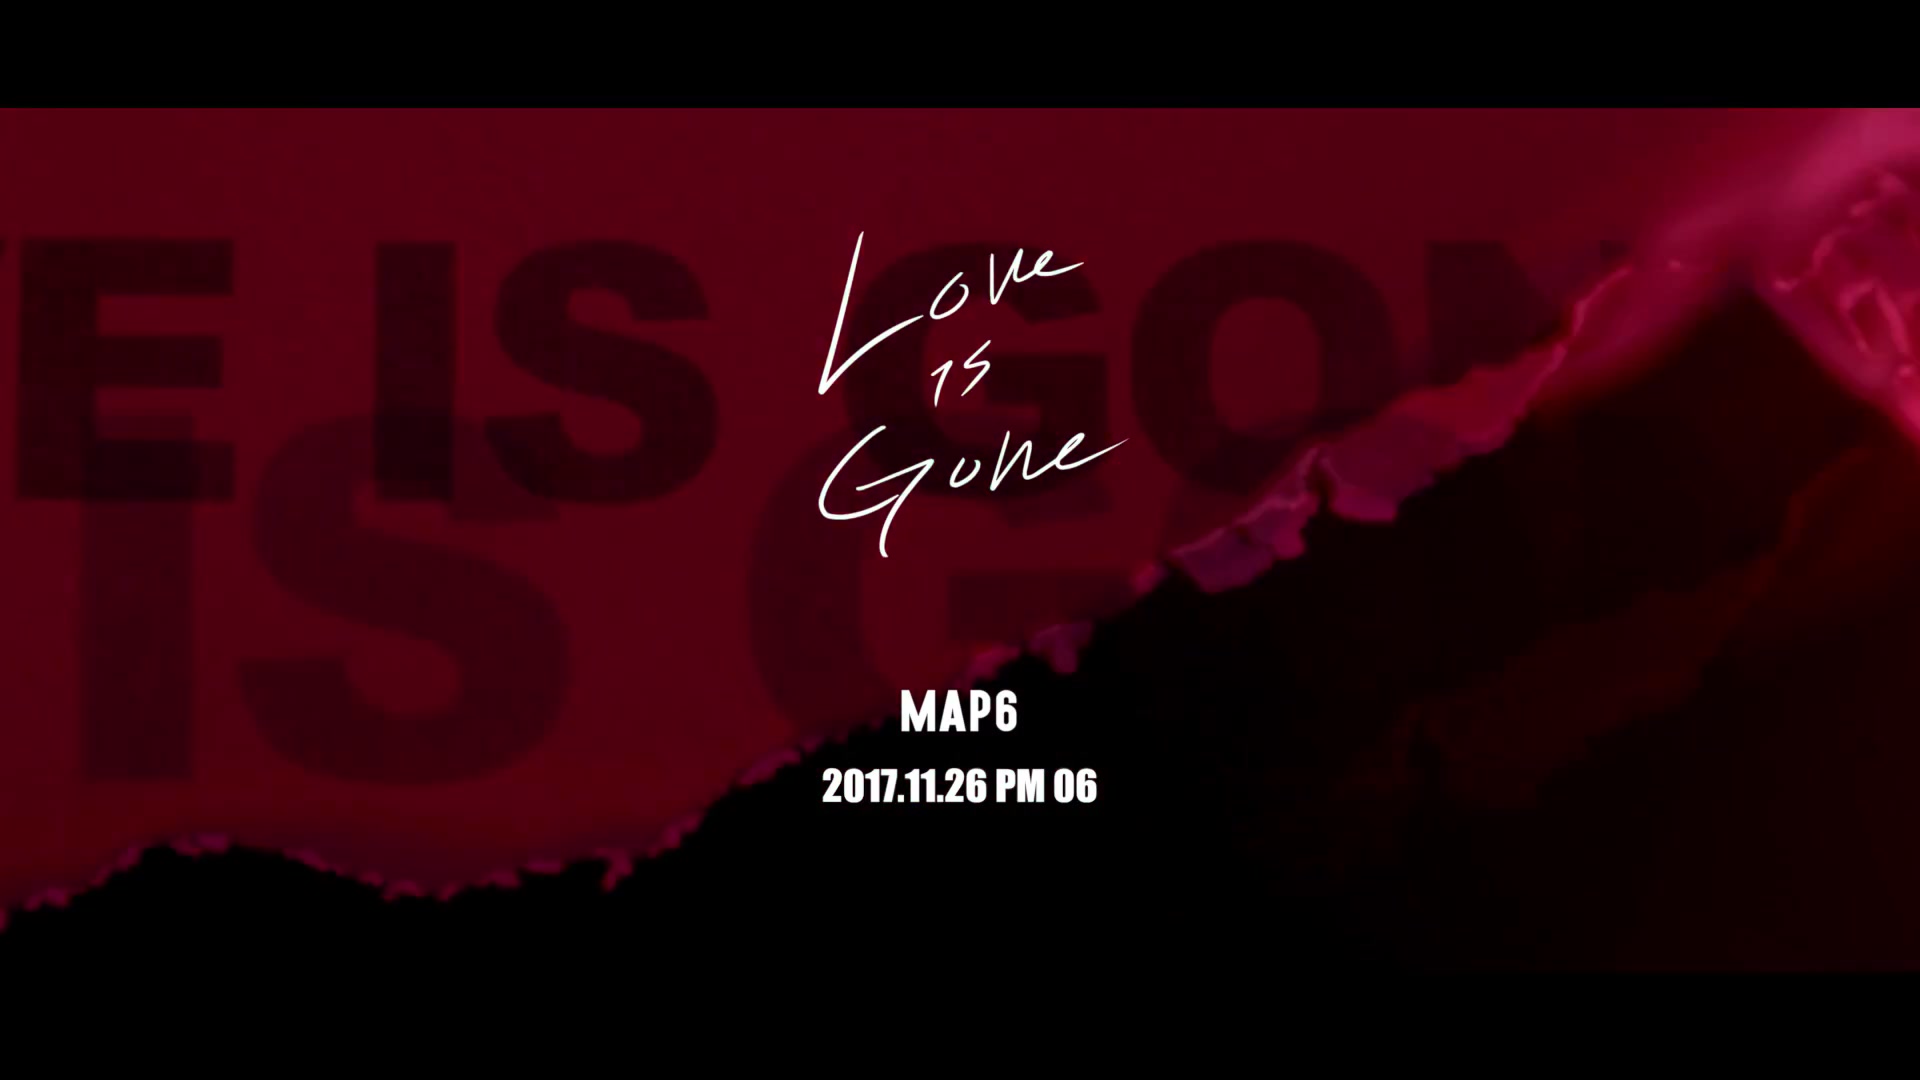 【map6】love is gone mv预告